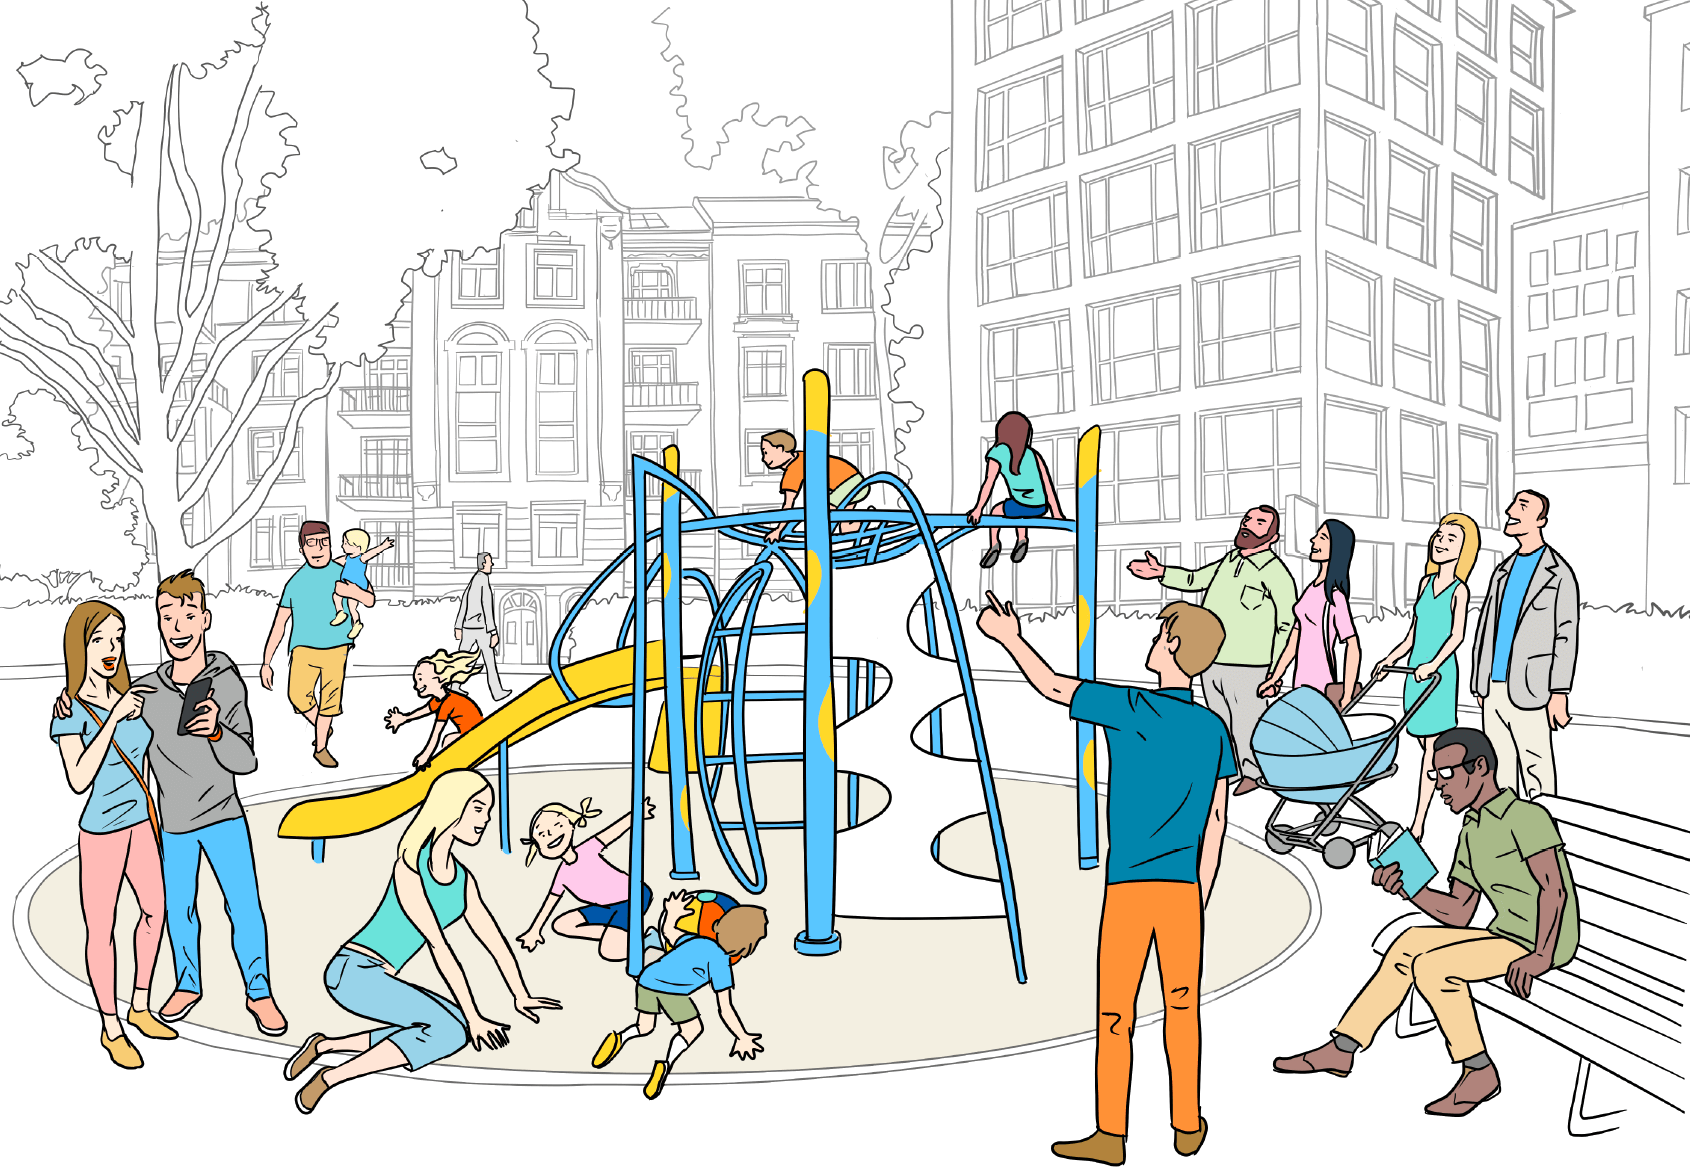 Illustration: Belebter Kinderspielplatz in der Stadt umgeben von Häusern.